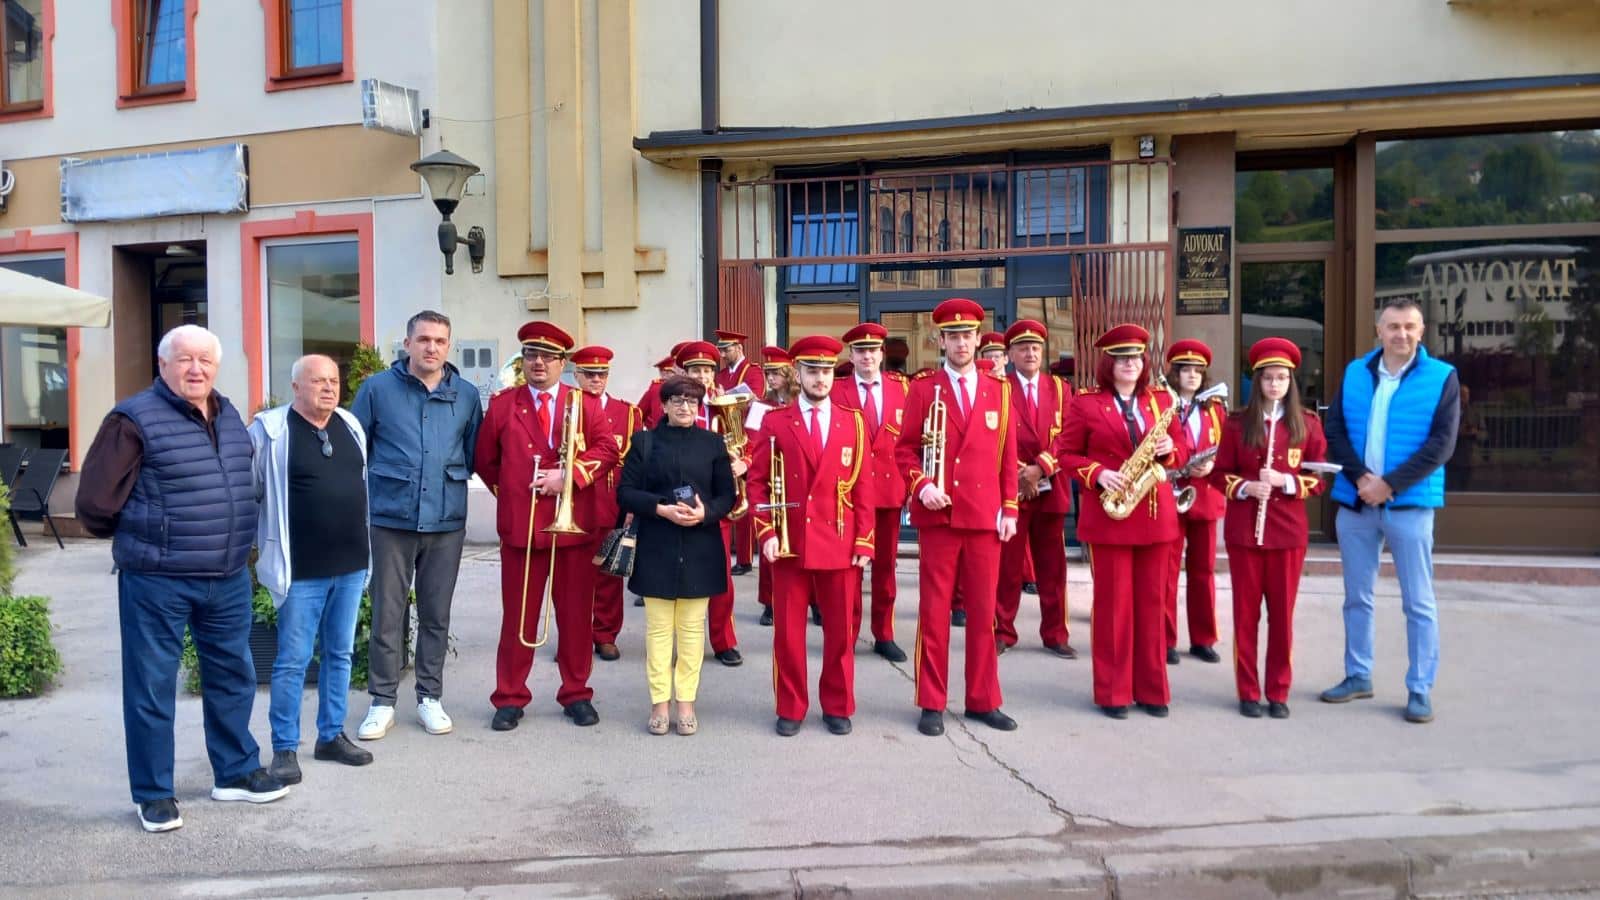 Prvomajski uranak u Travniku: Muzičko društvo Travnik nastavlja tradiciju (FOTO+VIDEO)